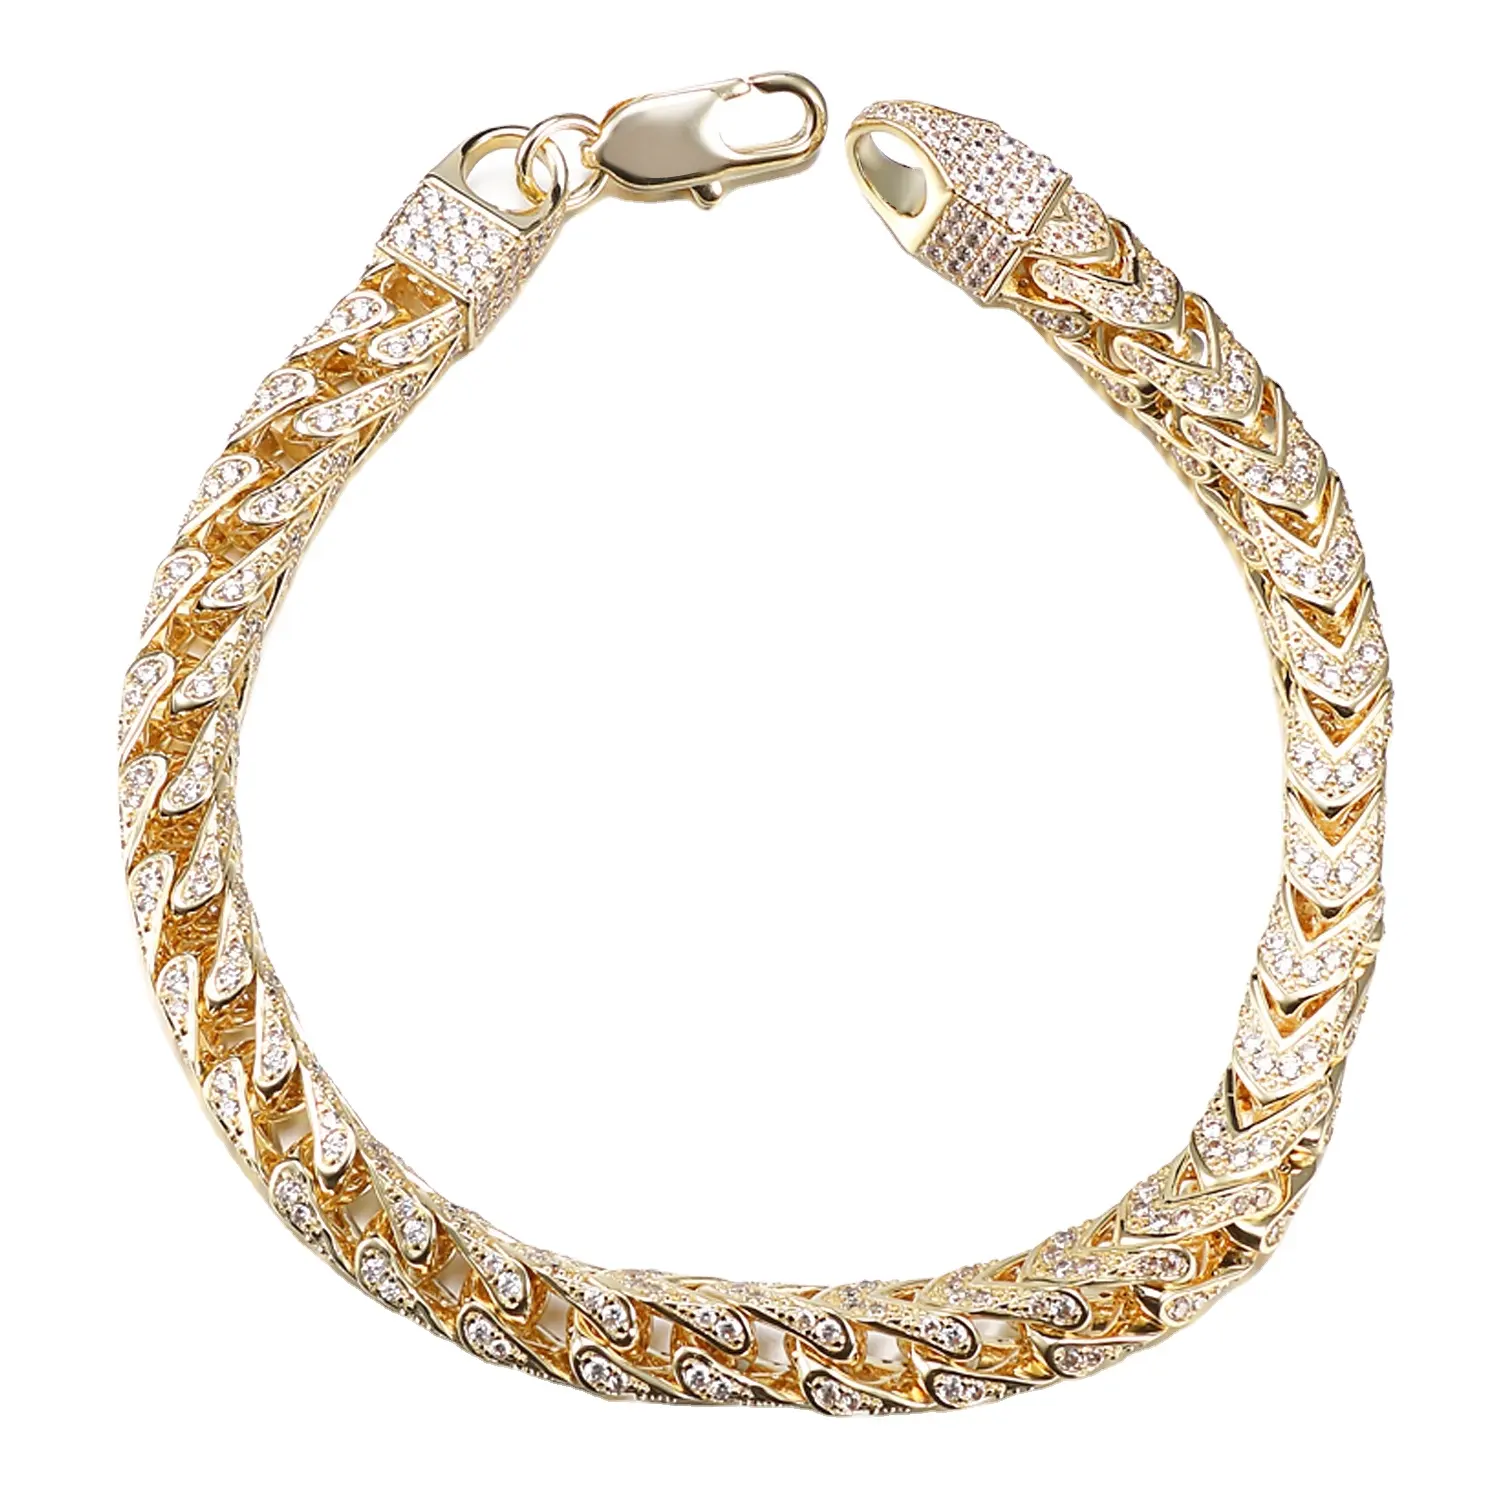 Jasen jewelry colar de prata, joias de design de corrente grande, hip hop, joias de prata 925, para homens